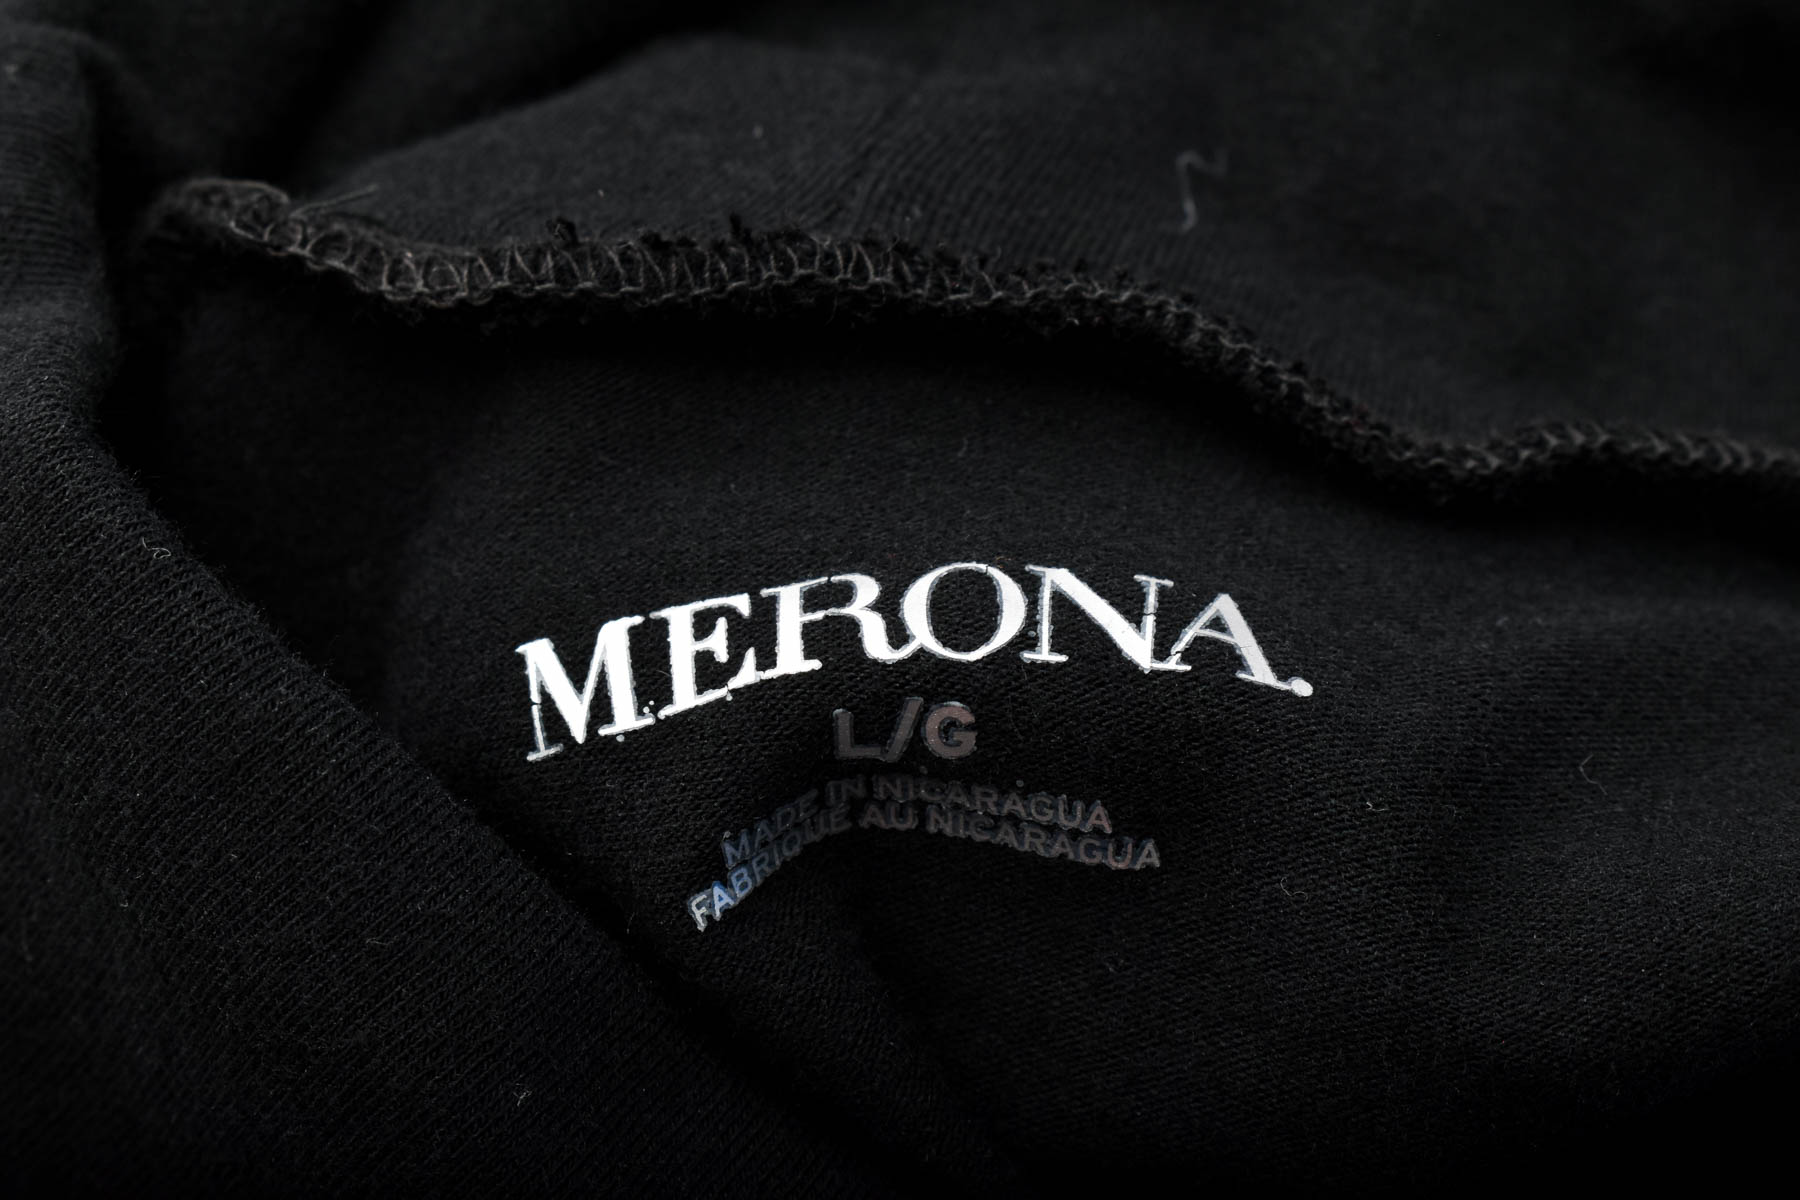 Women's blouse - MERONA - 2